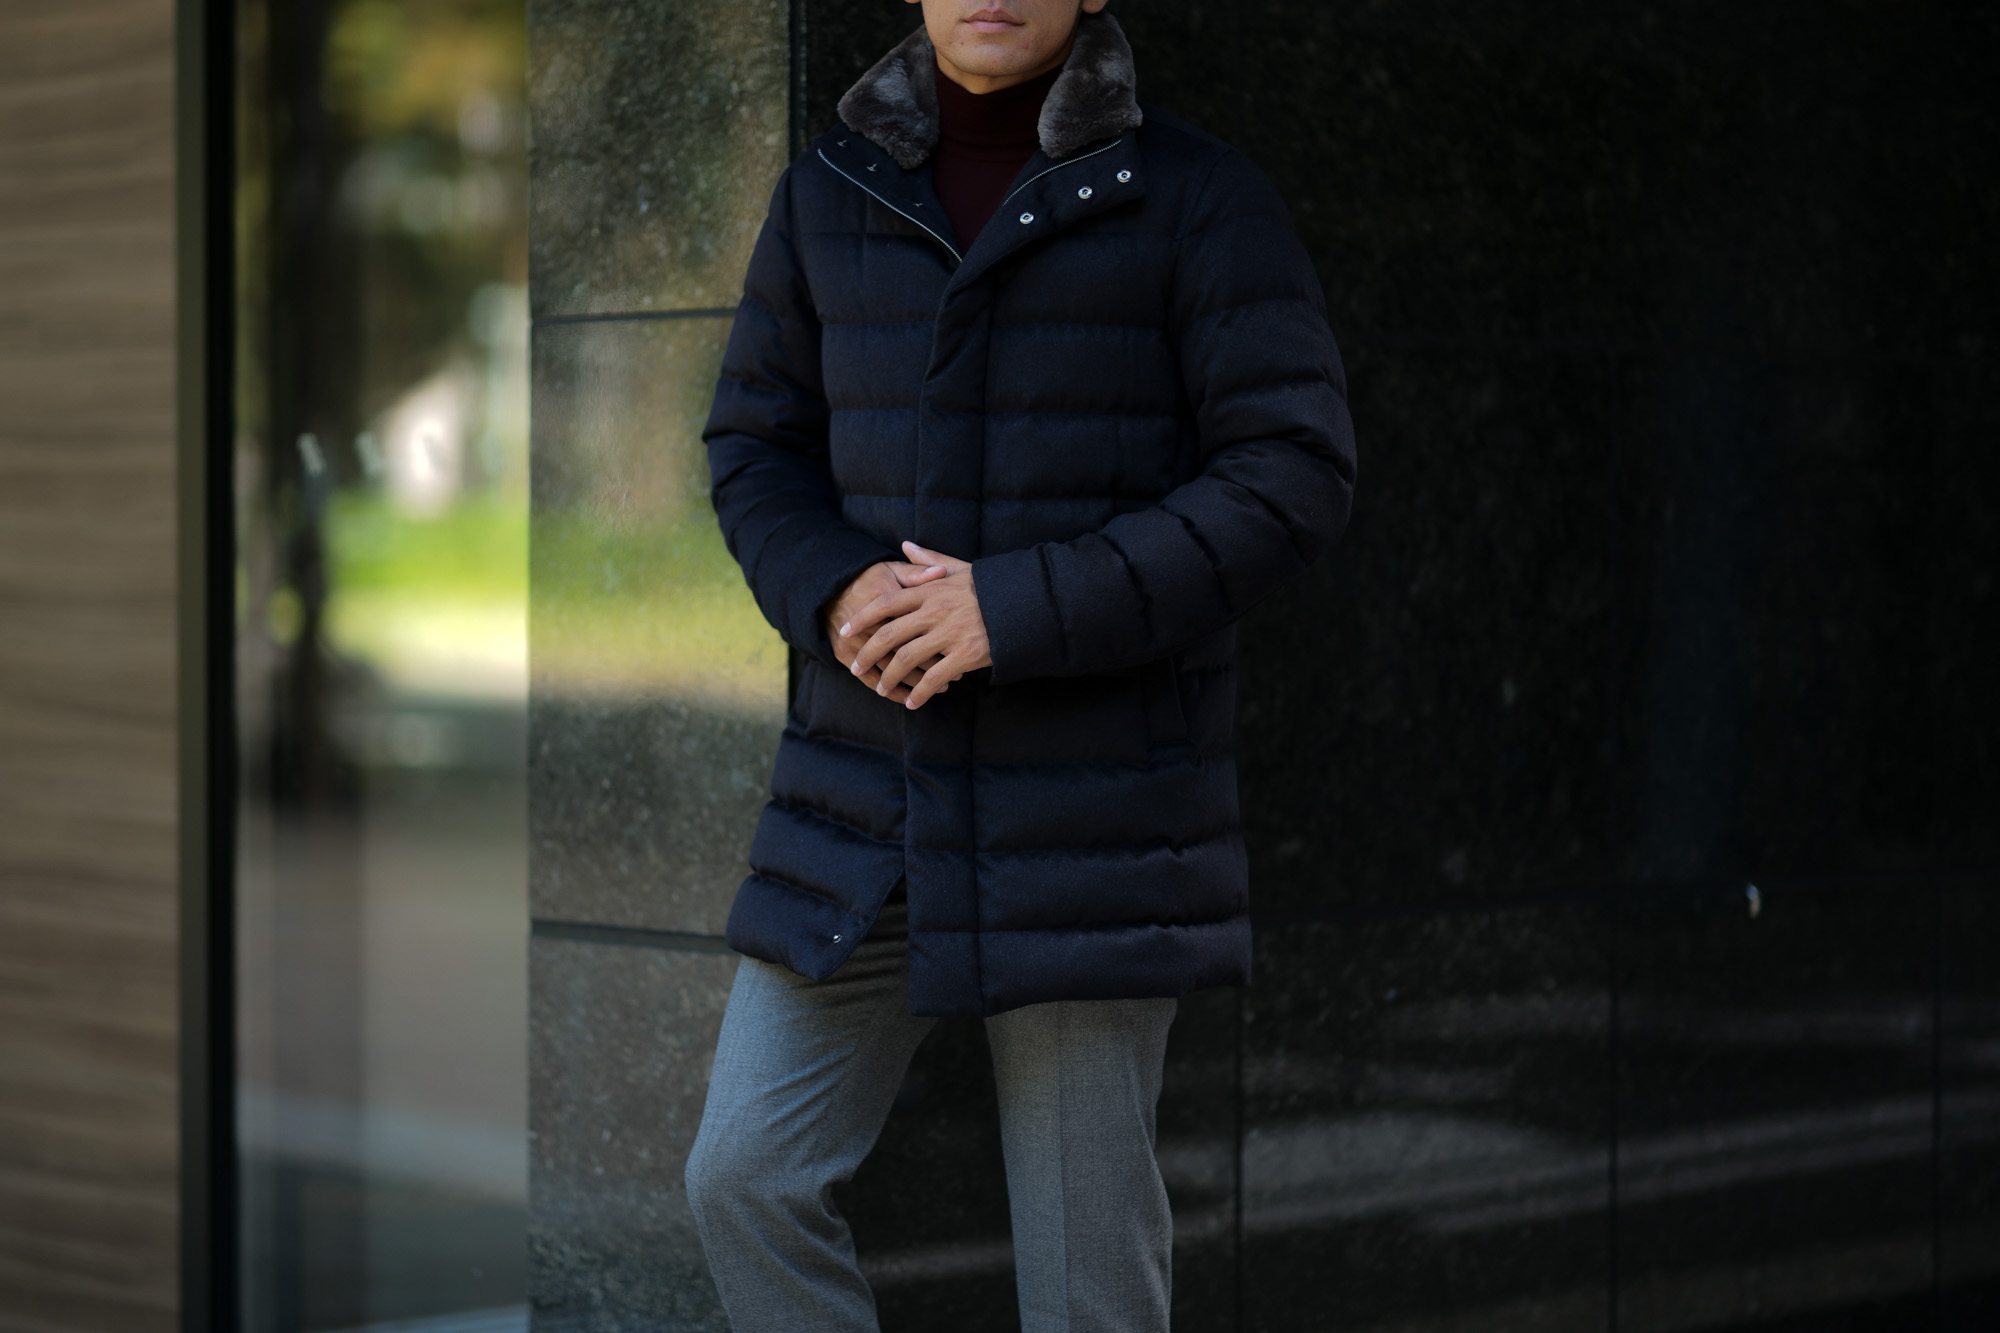 HERNO(ヘルノ) PI0439U Silk Cashmere Down coat (シルク カシミア ダウン コート) PIACENZA  (ピアツェンツァ) DROP GLIDE NYLON ULTRALIGHT 撥水 シルク カシミア ダウン コート NAVY (ネイビー・9200)  Made in italy (イタリア製) 2018 秋冬新作 – 正規通販・名古屋の ...